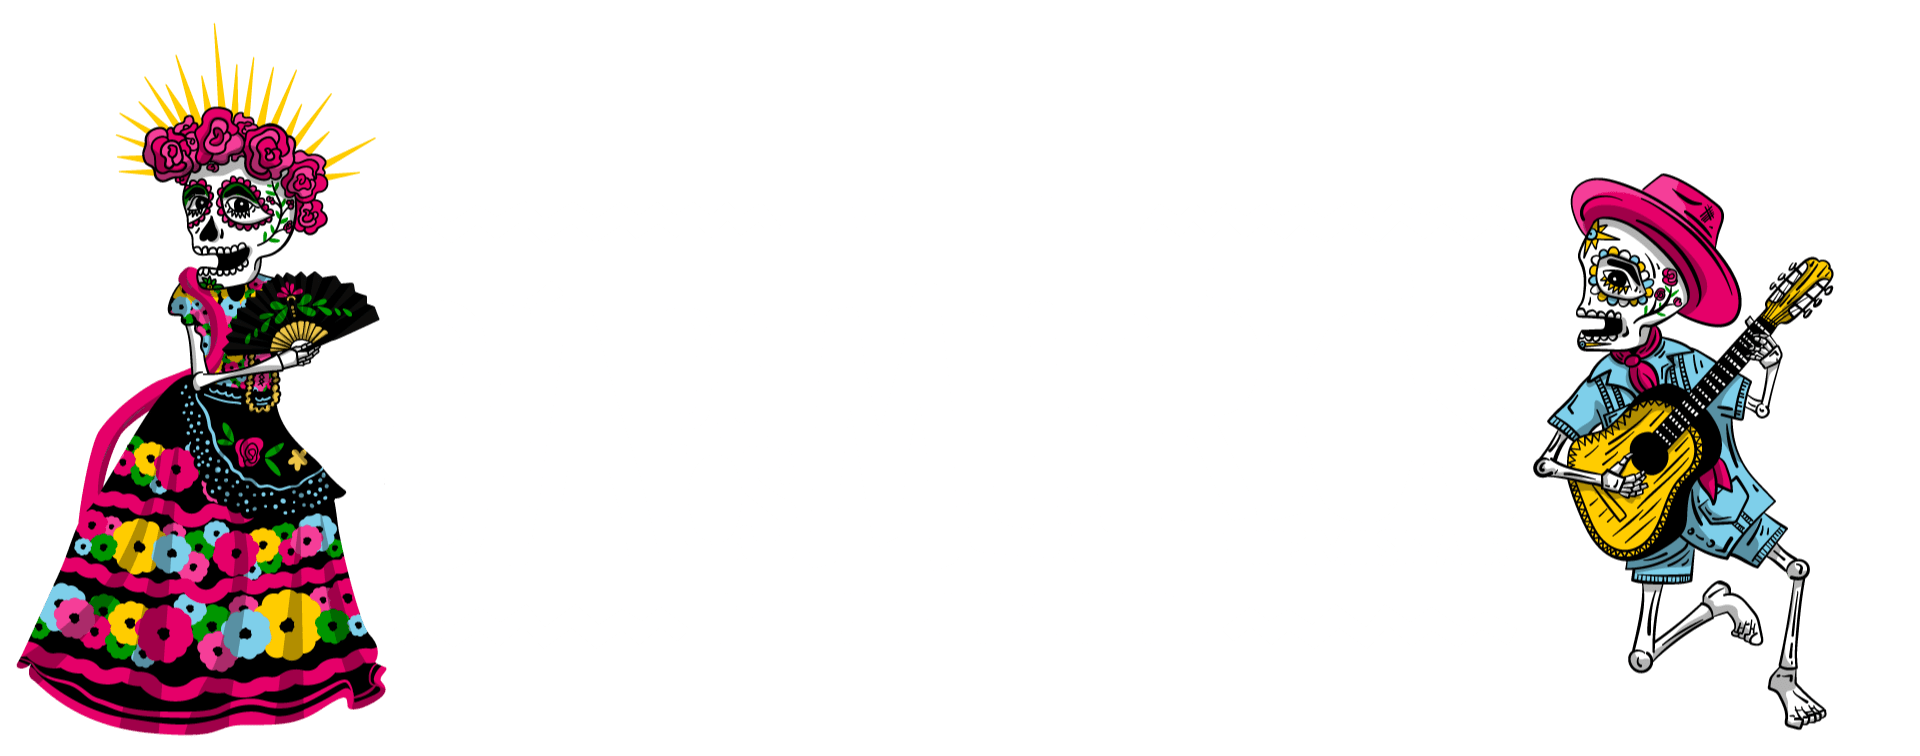 11th Annual Día de los Muertos Festival